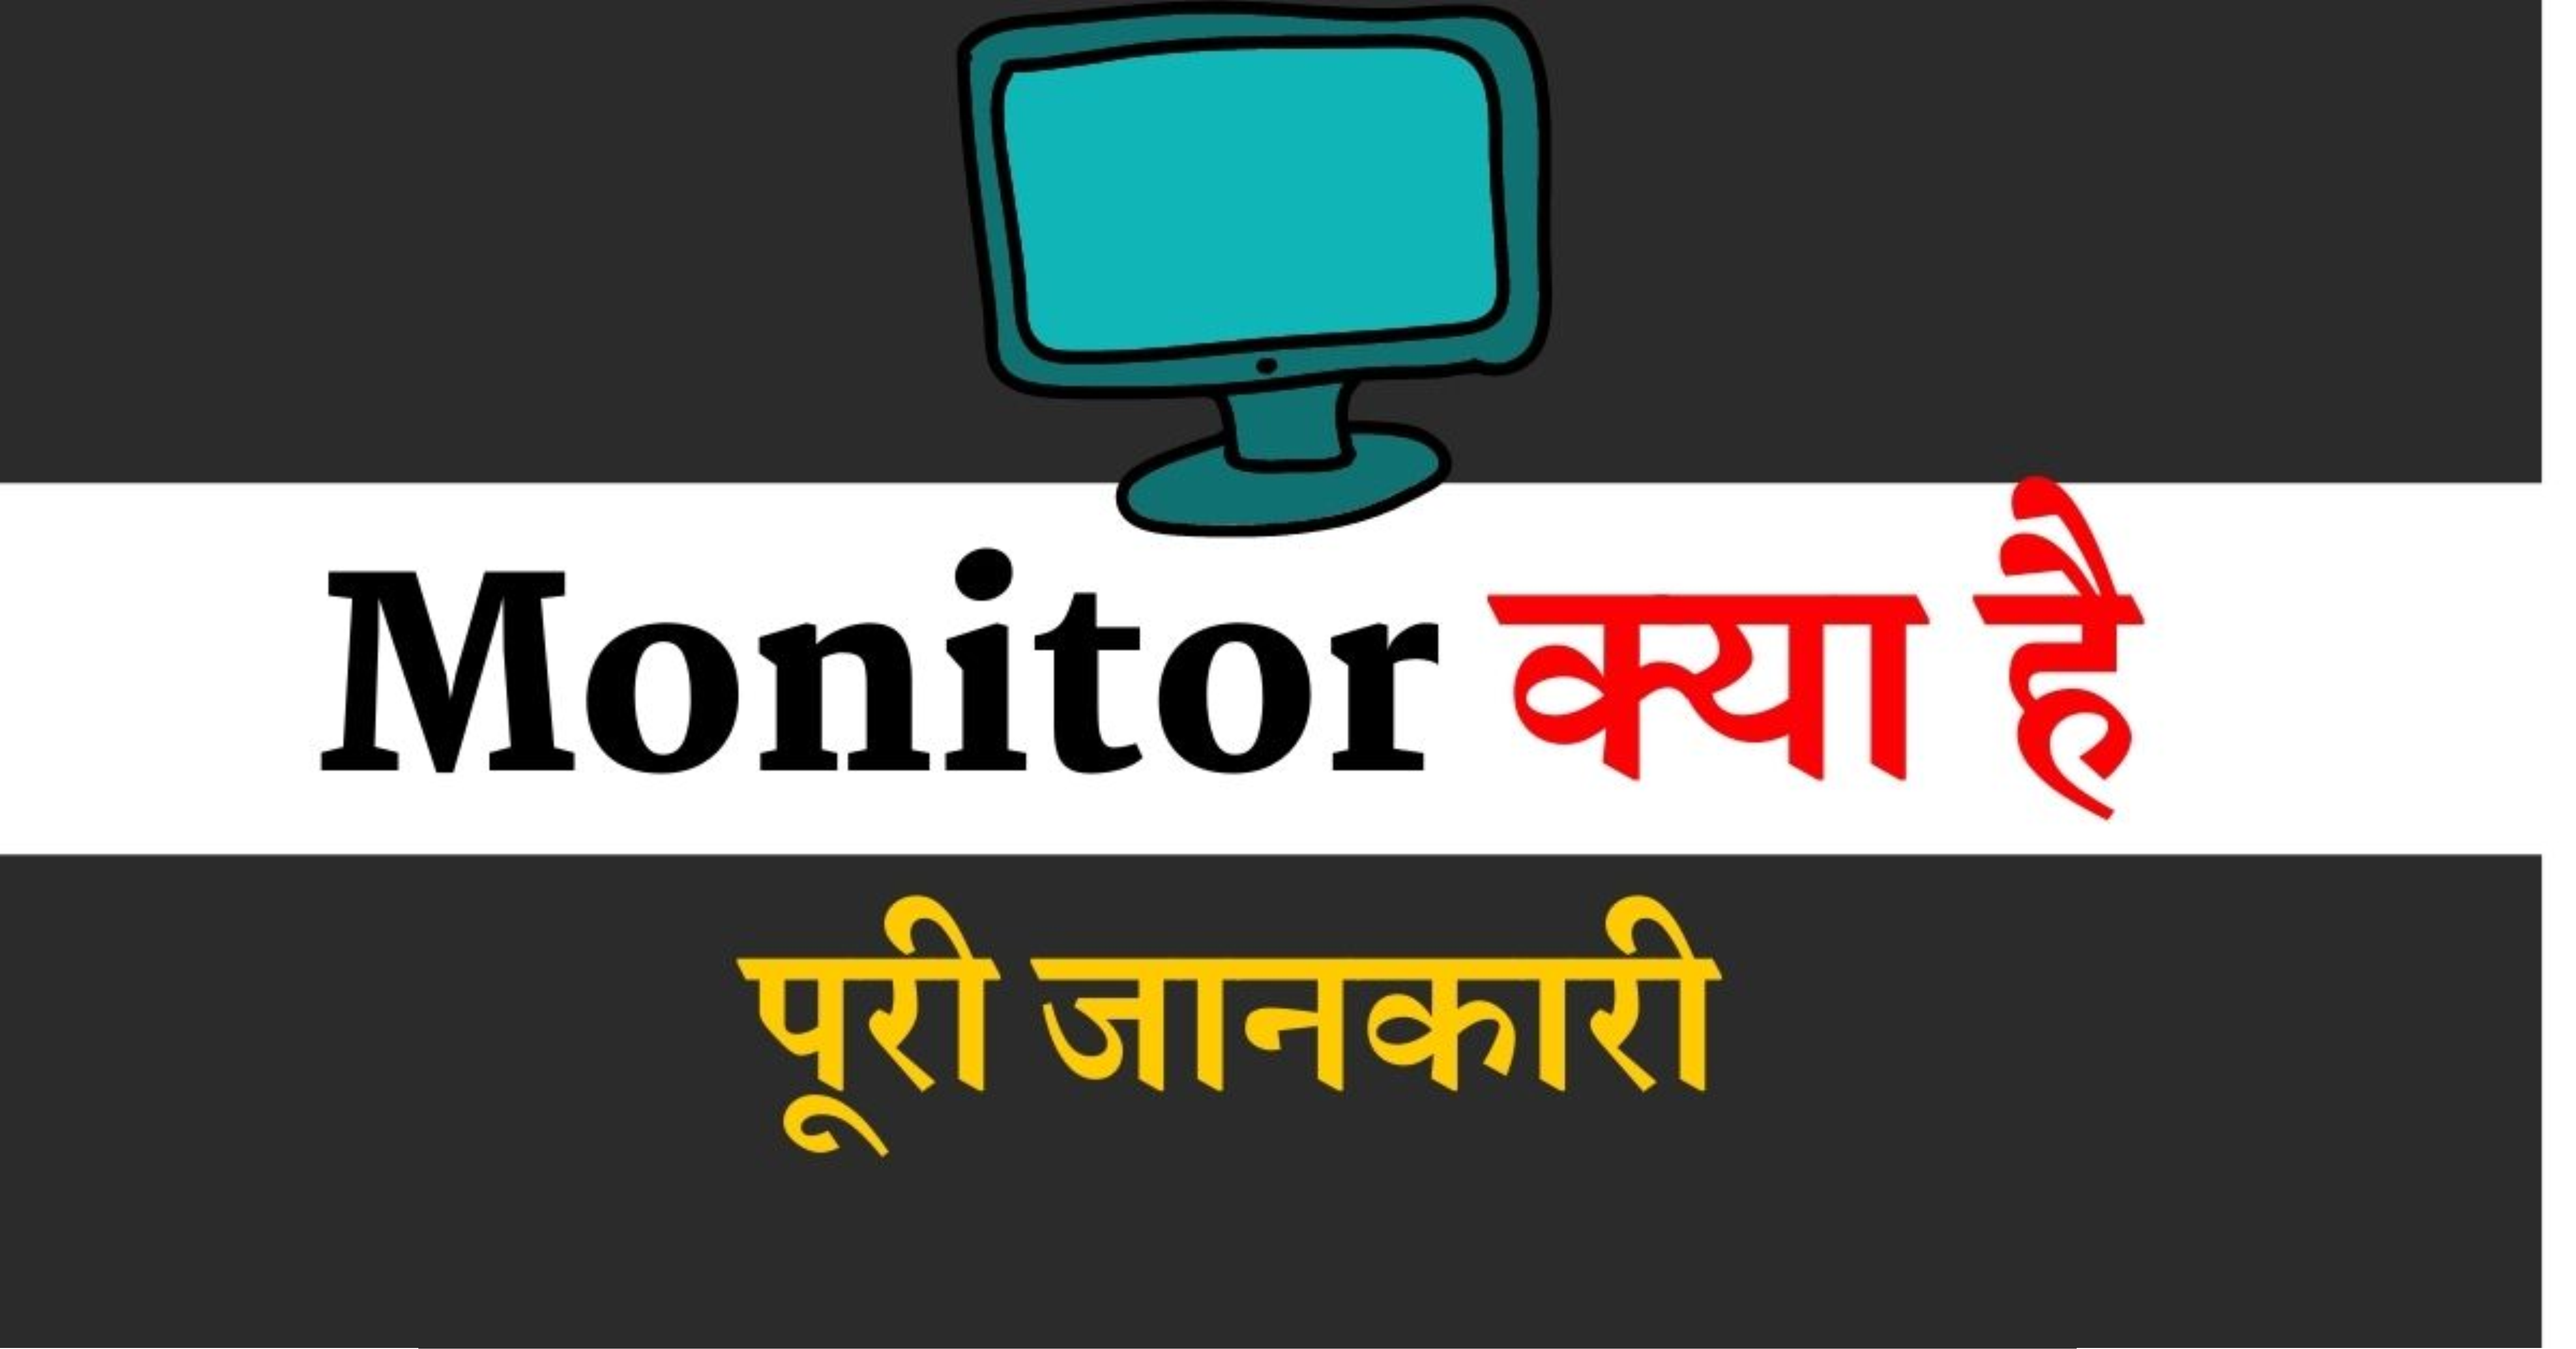 Monitor Kya hai